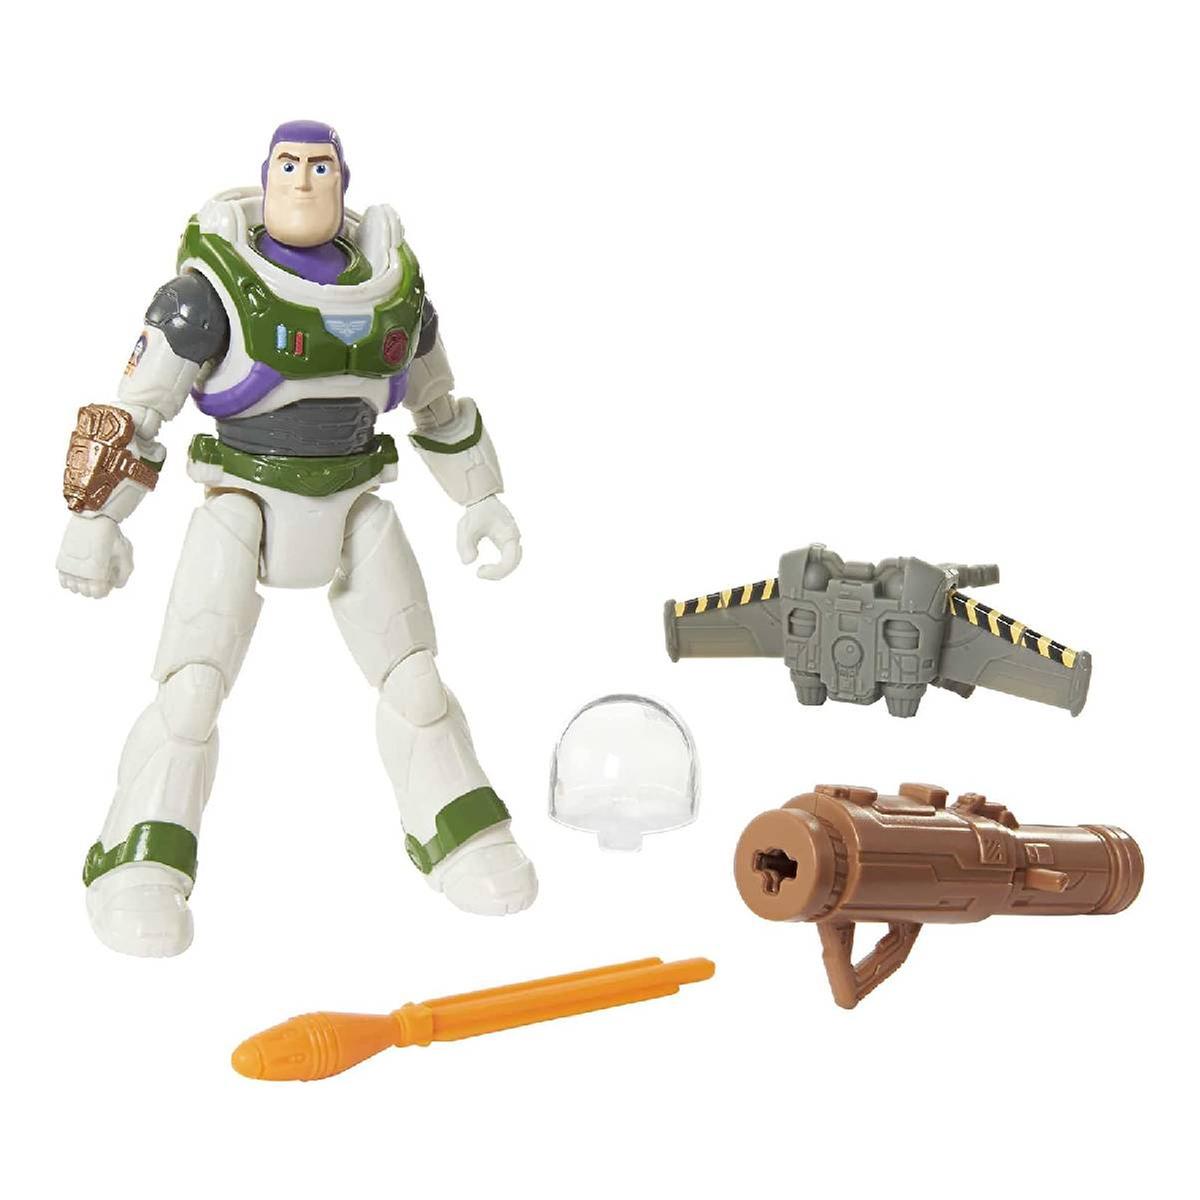 Lightyear - Buzz Lightyear equipado para la misión | Misc Action Figures |  Toys"R"Us España